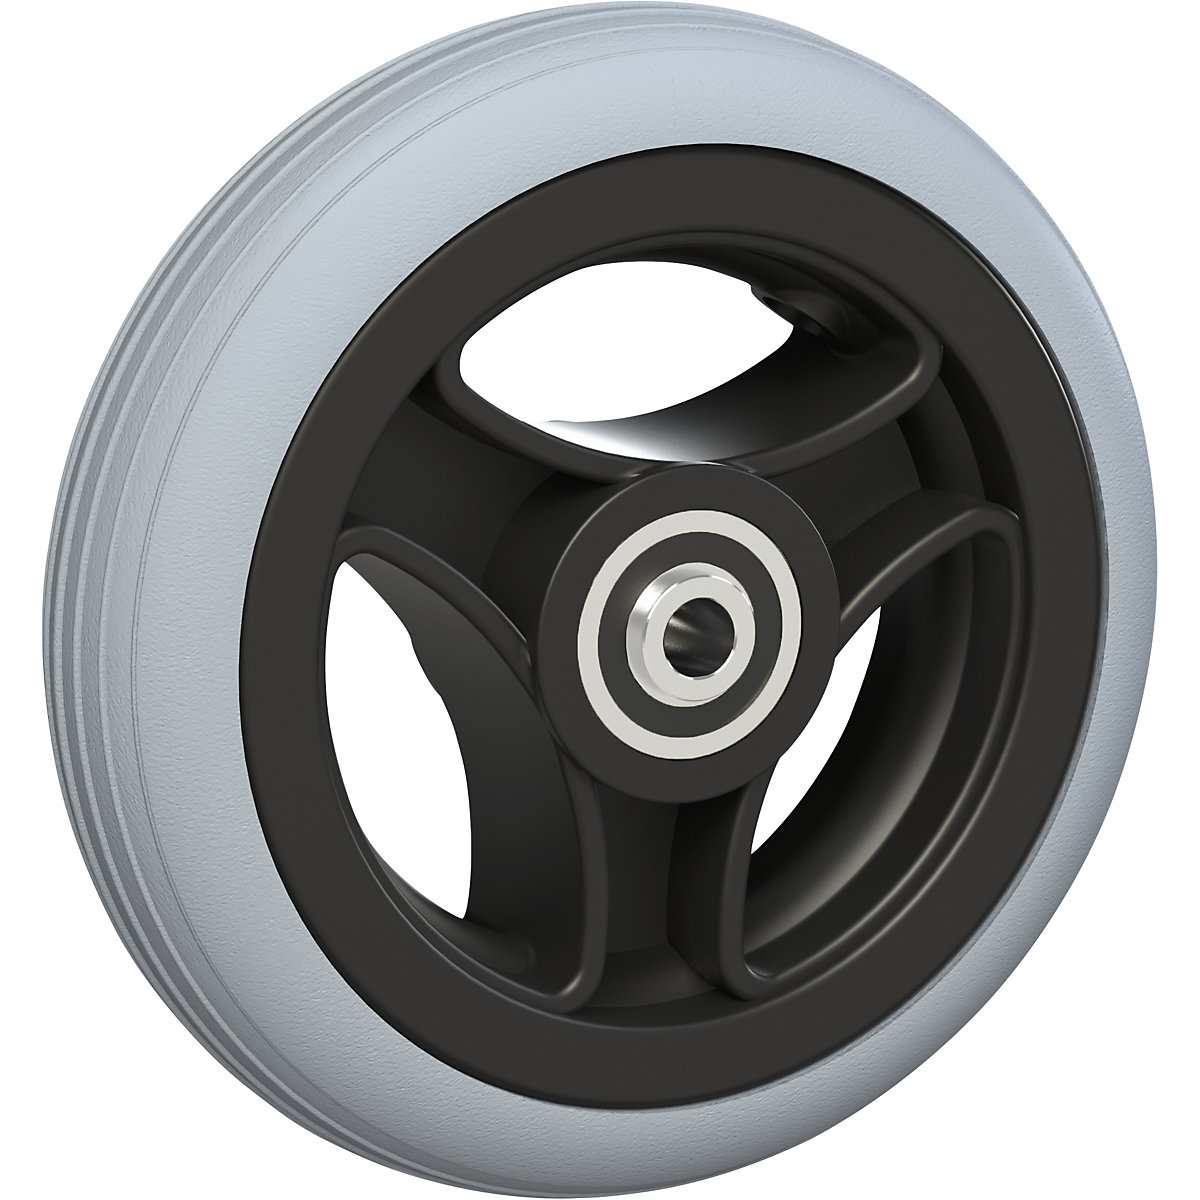 Roda com raios, com pneus de PU, não deixam marcas, Ø da roda x largura 125 x 30 mm, a partir de 4 unid.-2